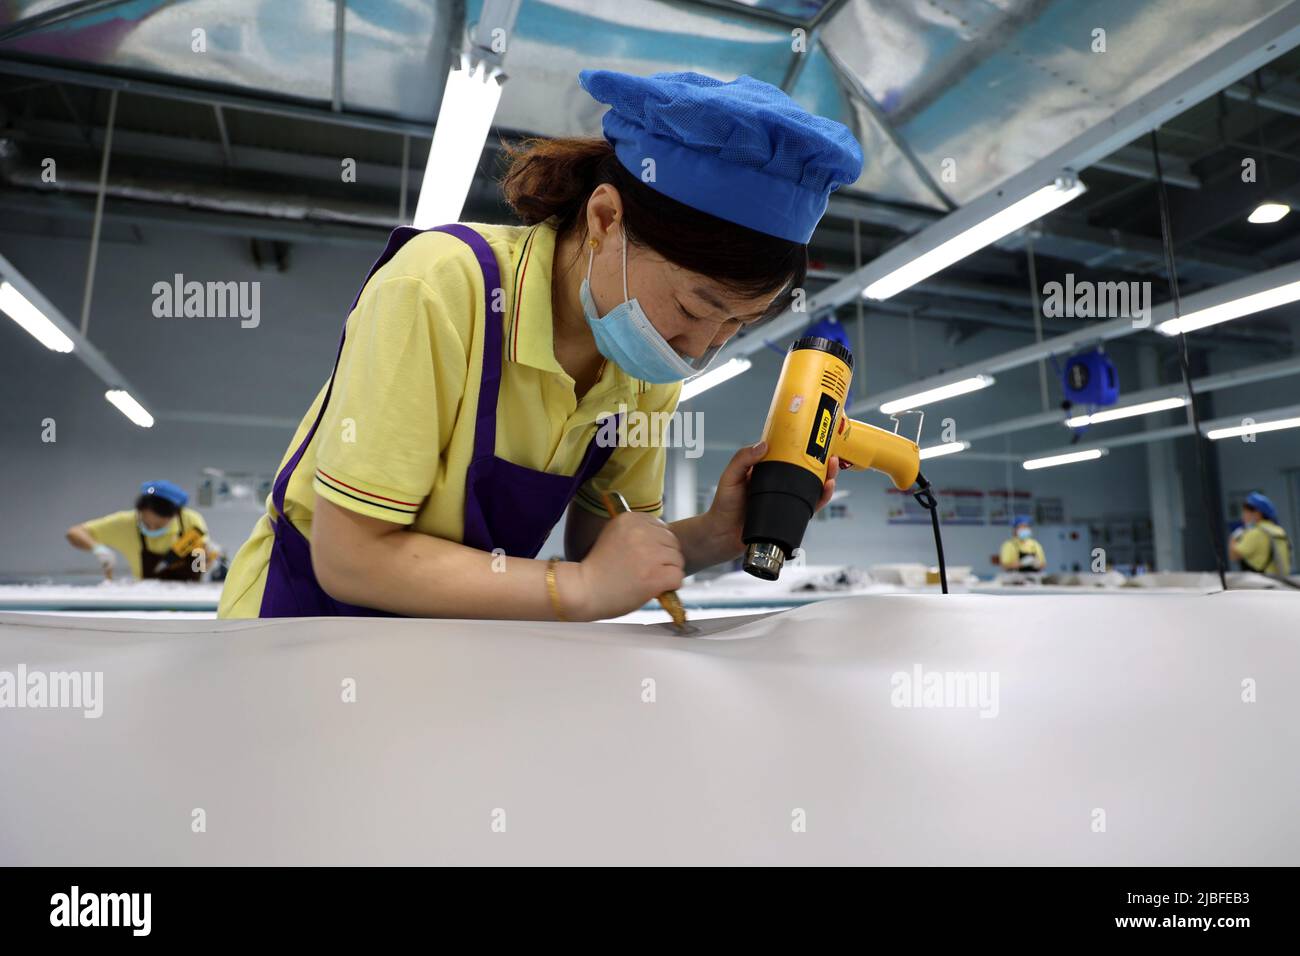 BINZHOU, CHINA - 6. JUNI 2022 - Ein Arbeiter produziert Surfbretter für Bestellungen aus dem Ausland in einer Surfbrett-Produktionswerkstatt in Binzhou, Shandong, Ostchina Stockfoto